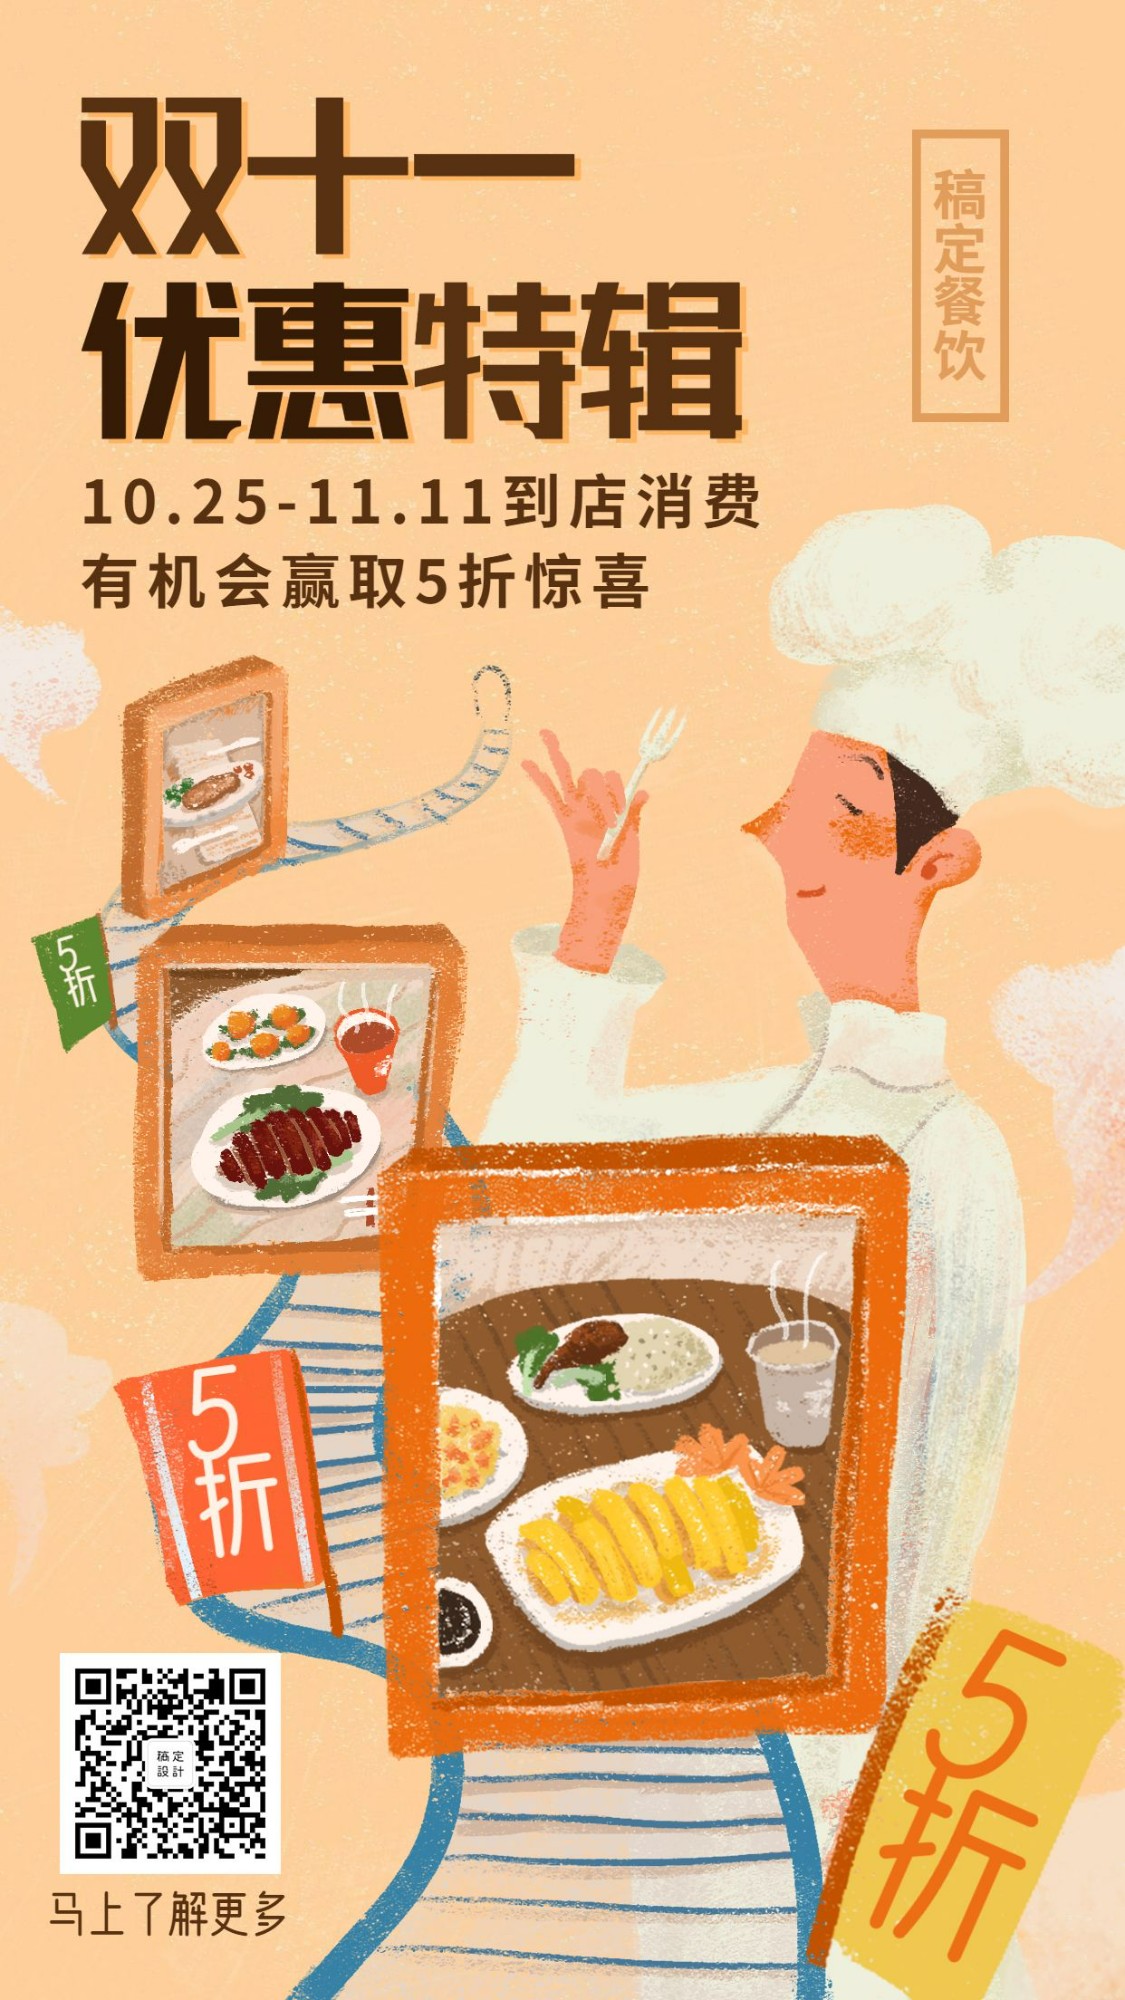 双十一促销活动餐饮美食手绘文艺手机海报预览效果